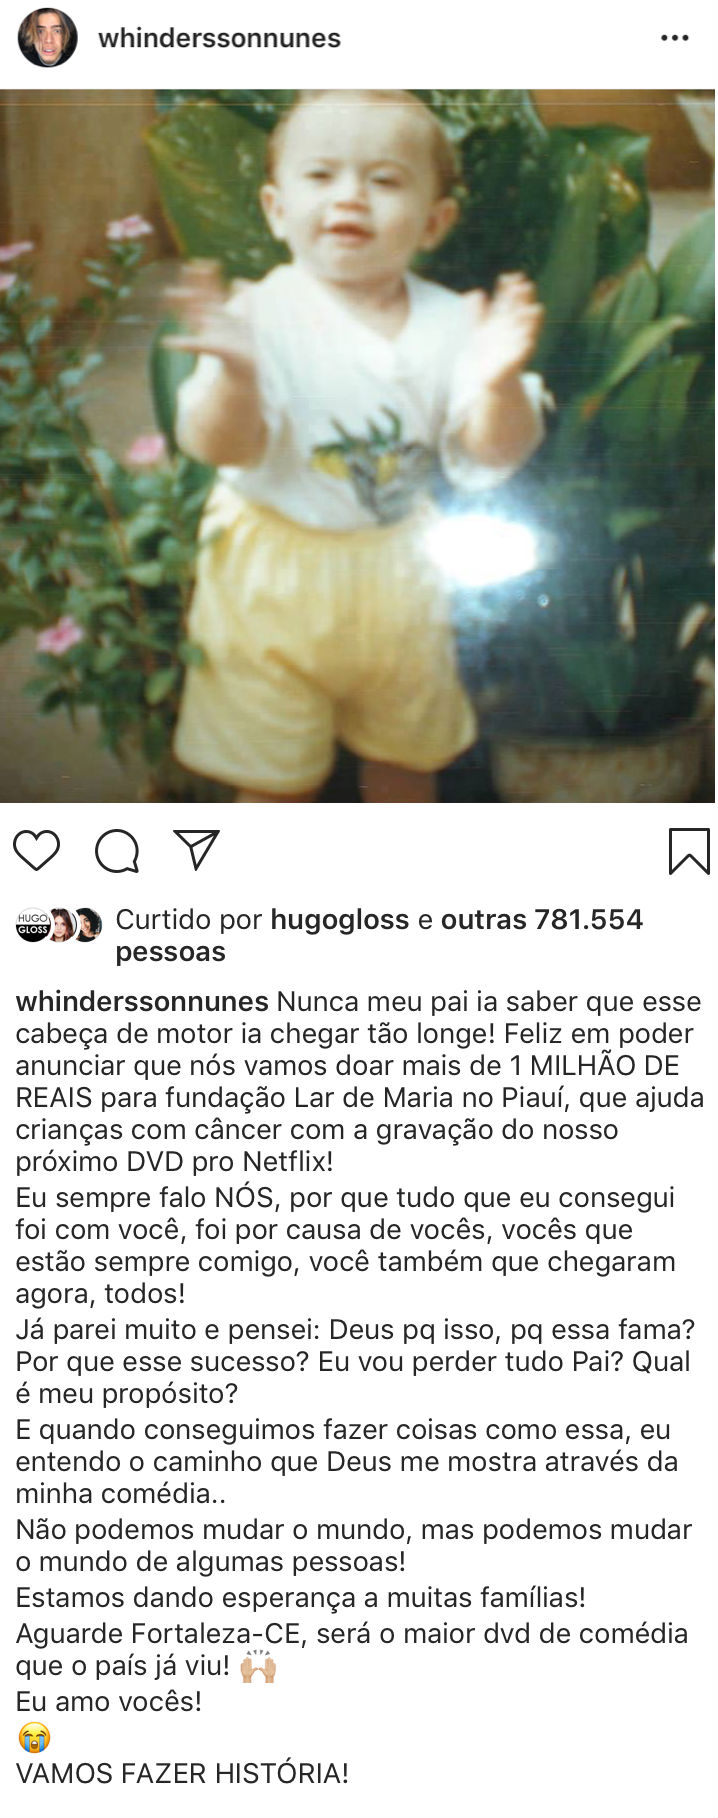 whindersson-nunes-vai-doar-1-milhao-de-reais-instituicao-cancer